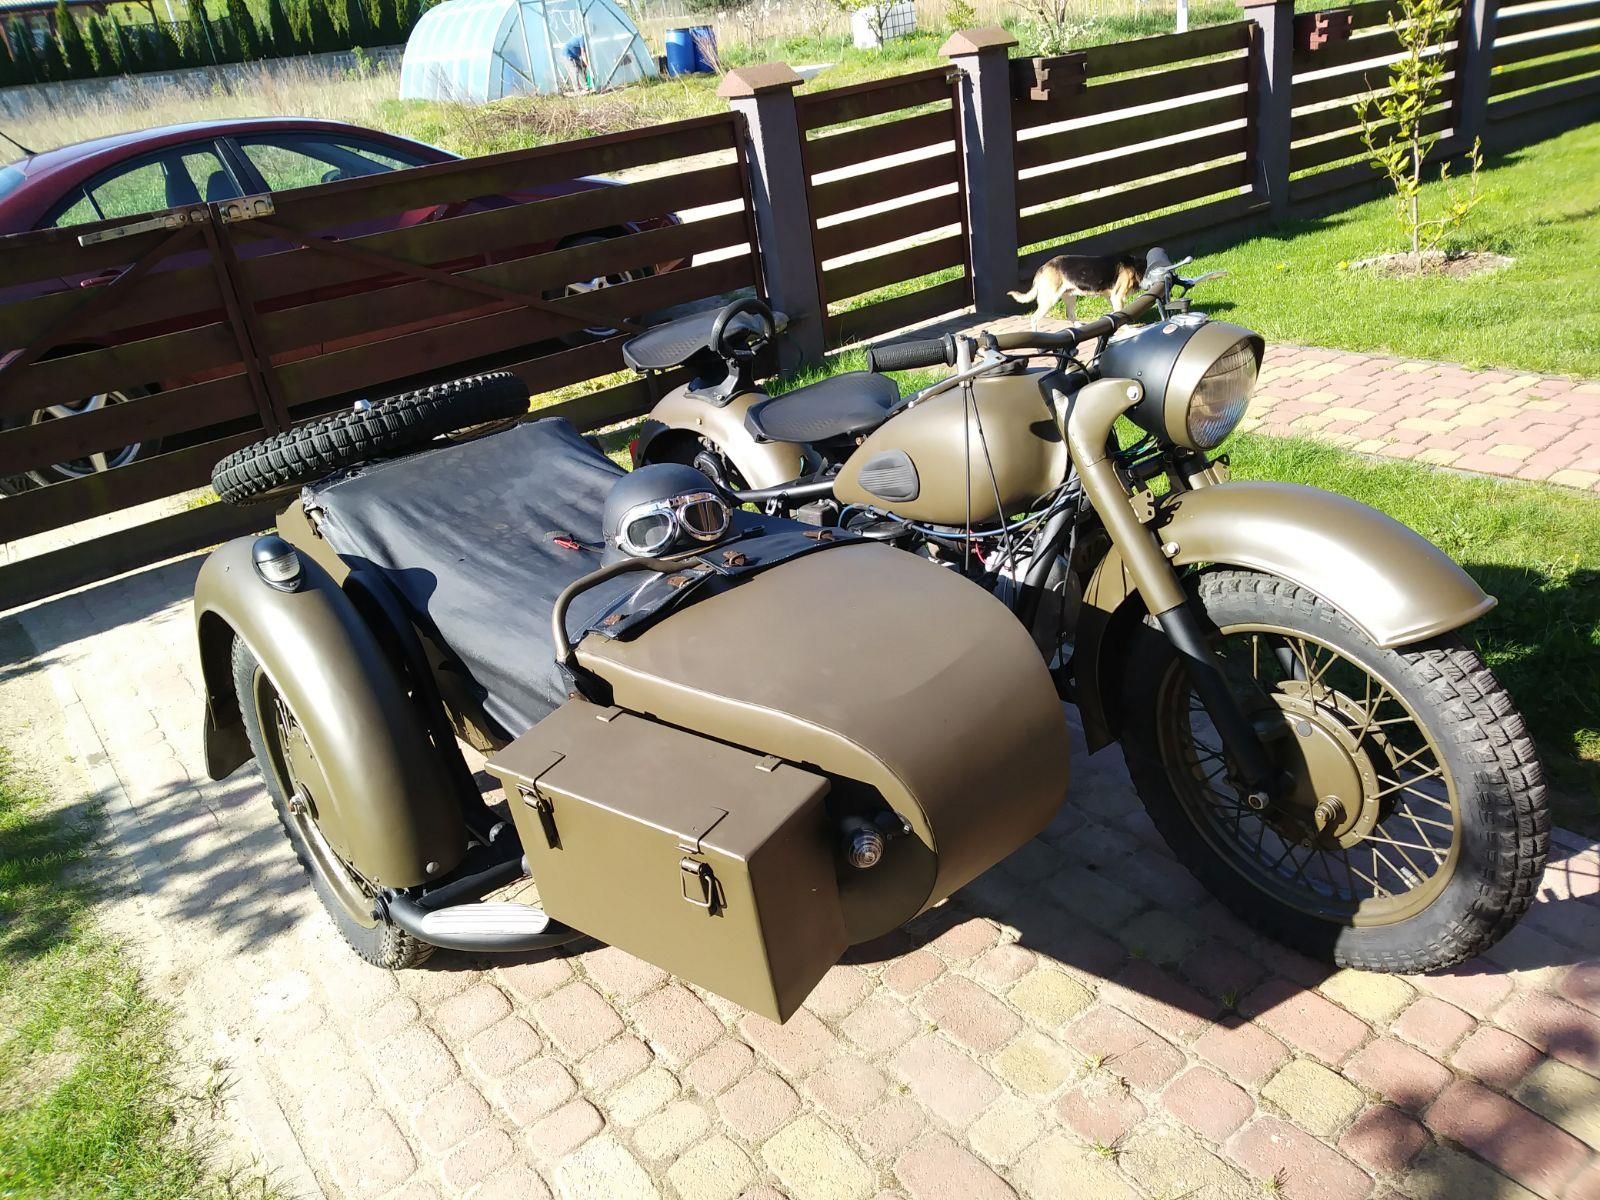 Motocykl k750 z koszem bocznym Opinie i ceny na Ceneo.pl